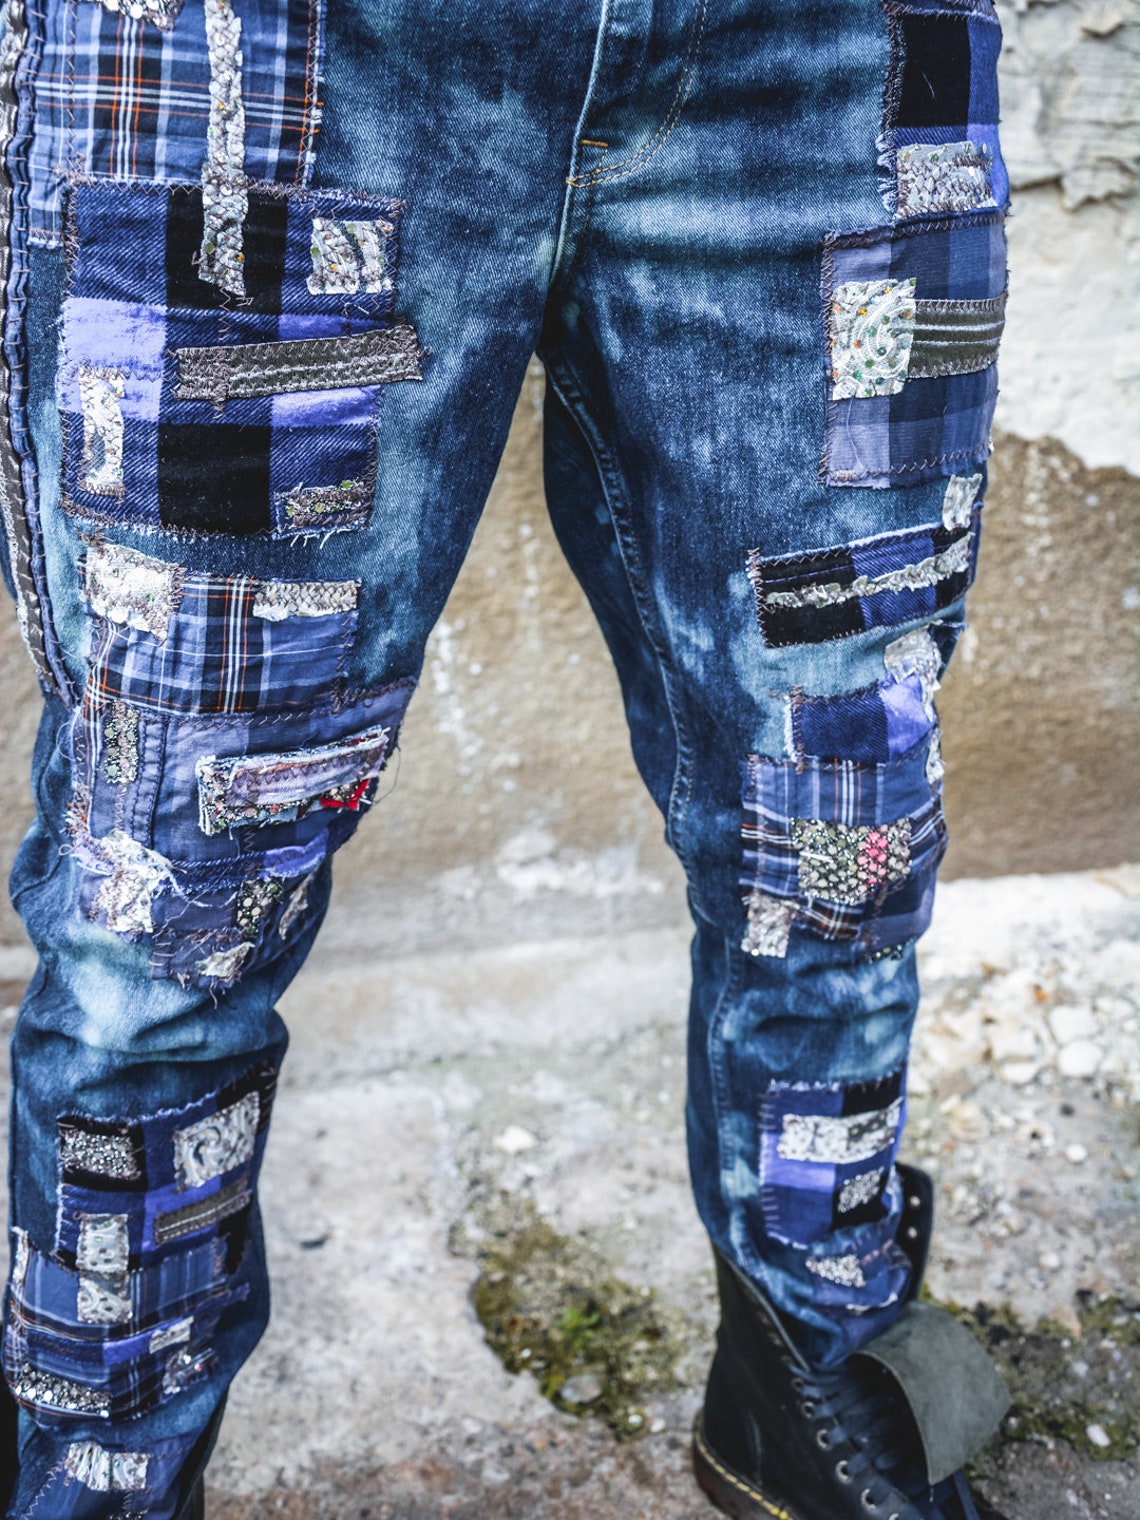 Crust Punk Pants Alternative Clothing Grunge Clothing | Etsy